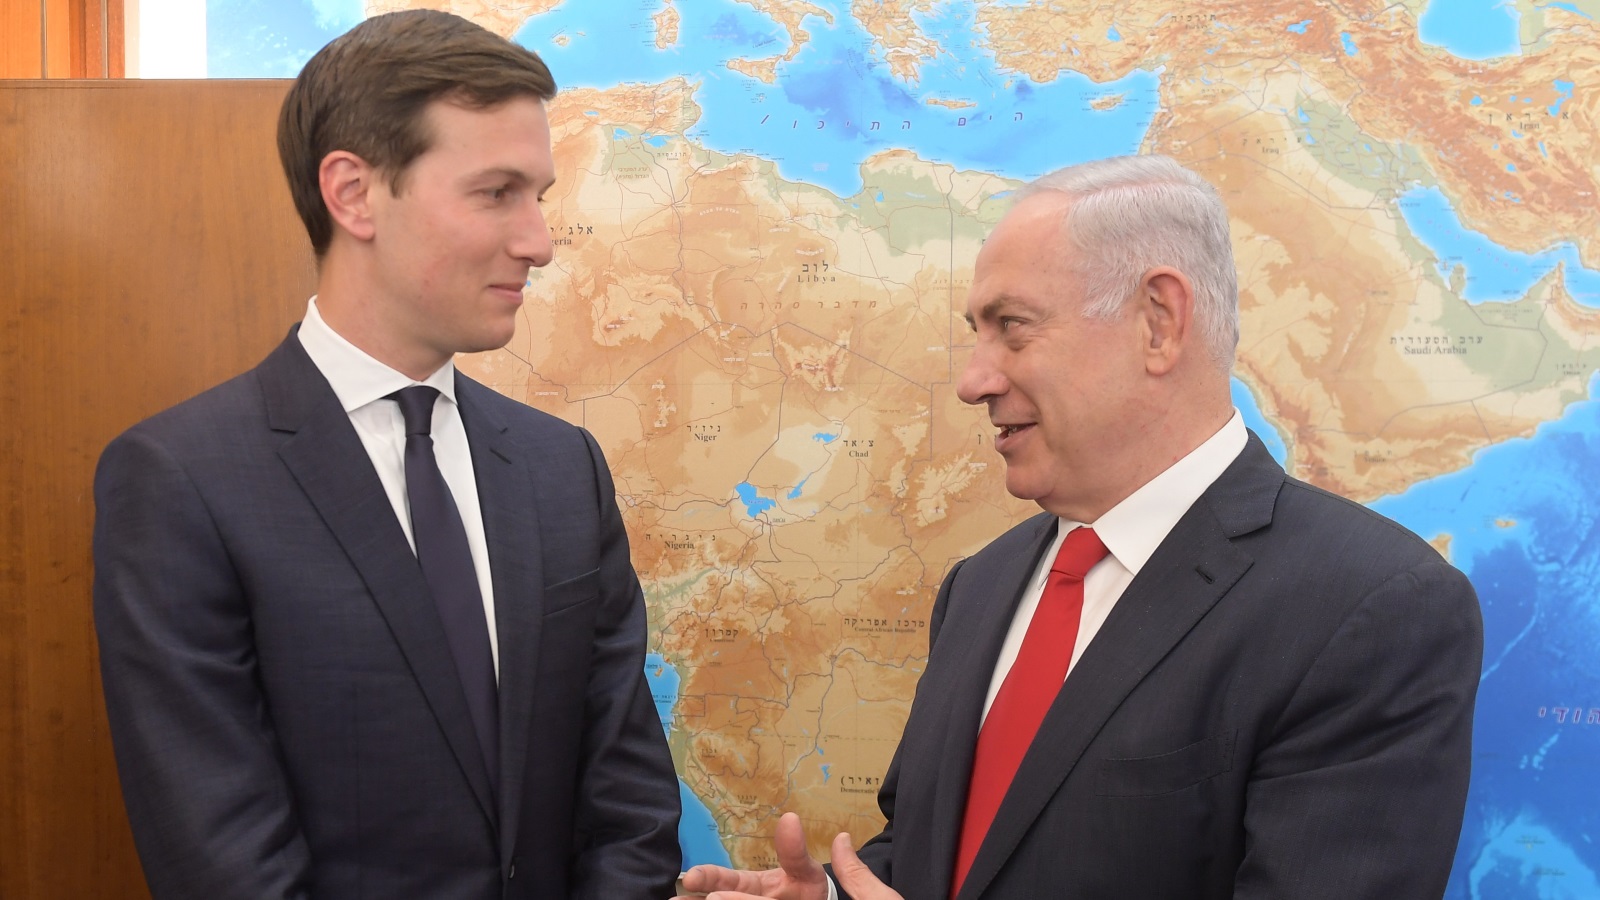 كوشنر (يسار) خلال لقاء مع بنيامين نتنياهو في القدس المحتلة (غيتي)